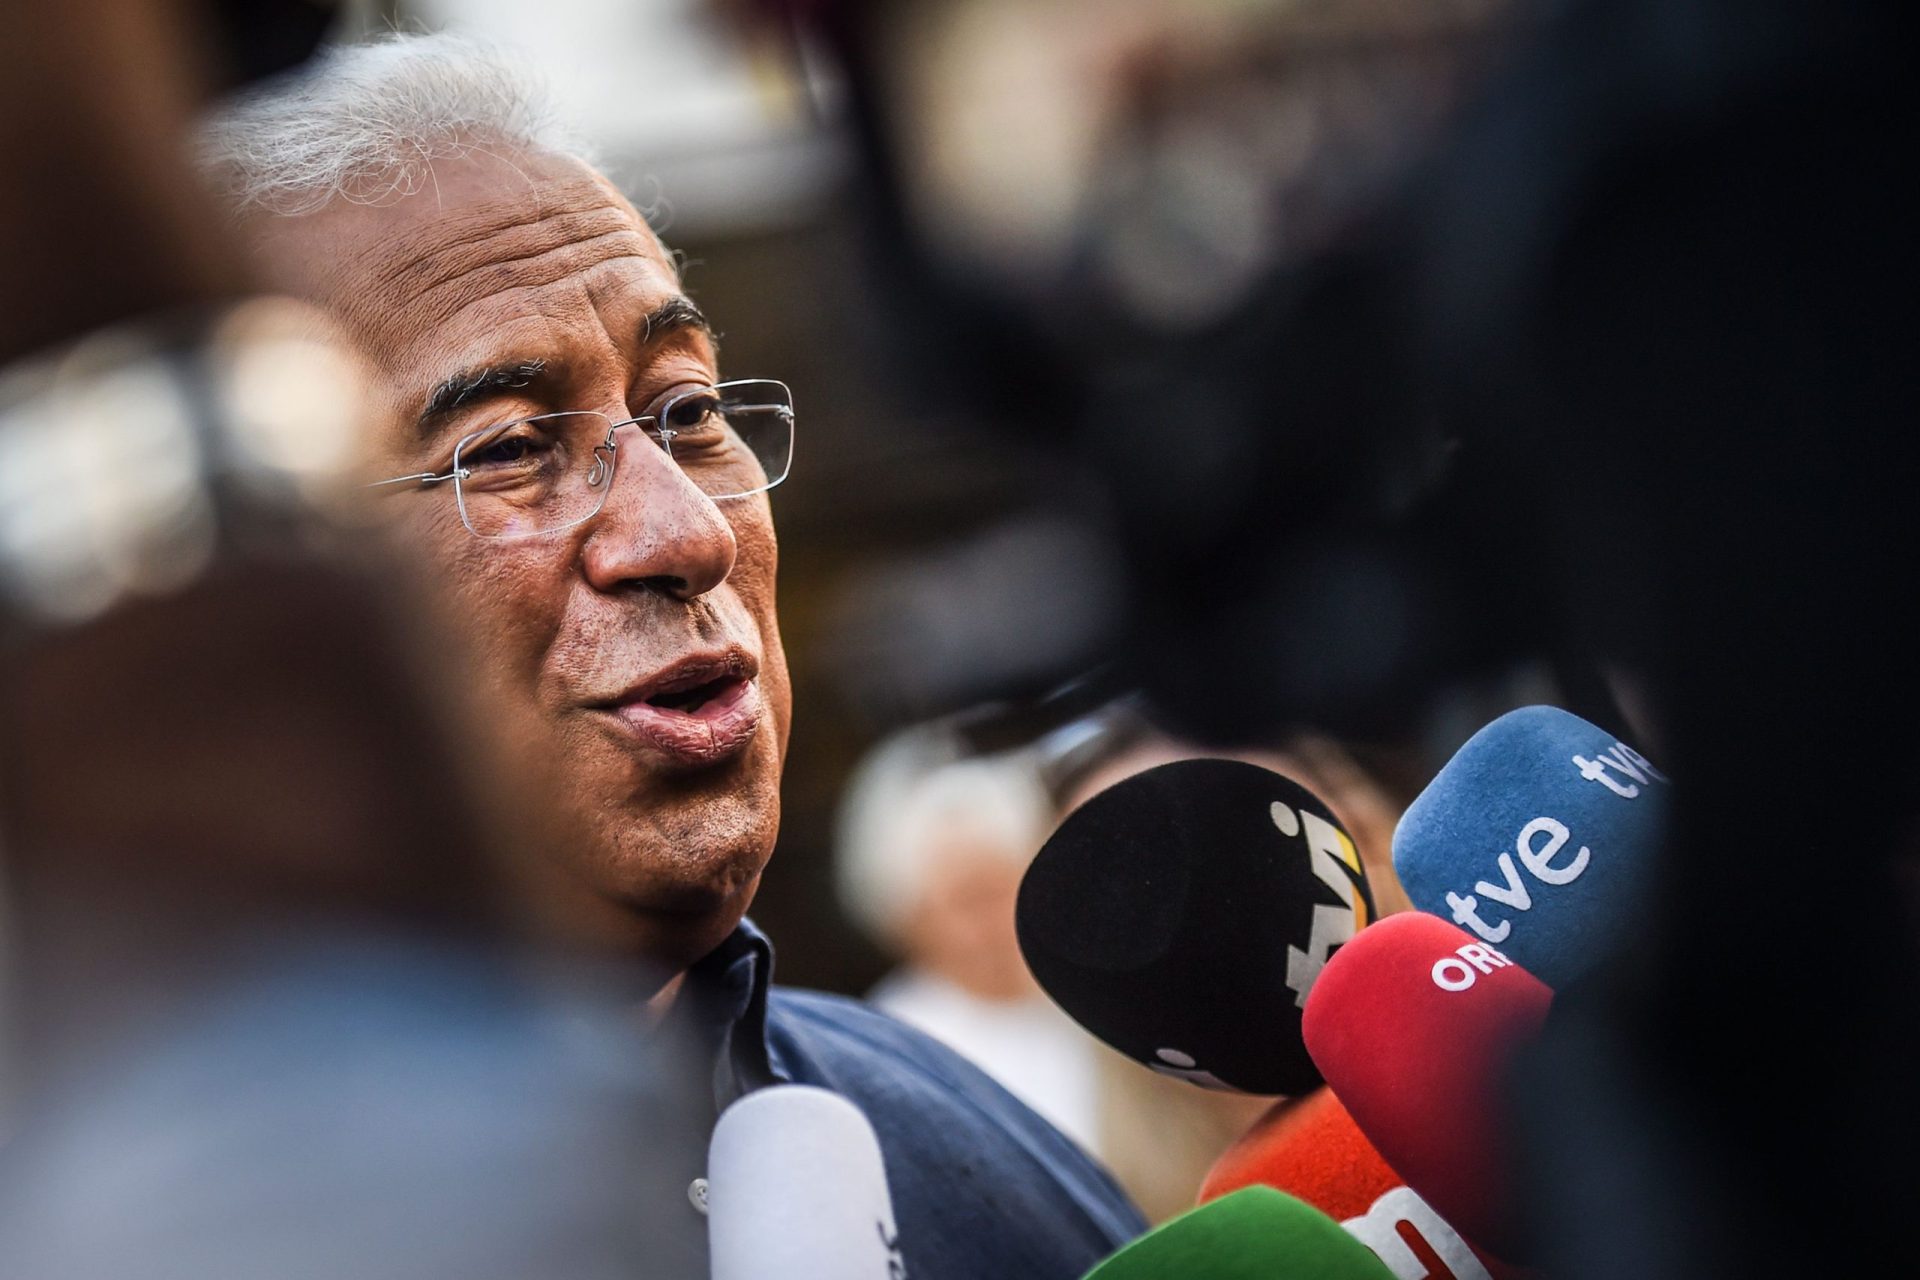 As eleições portuguesas vistas pela imprensa estrangeira